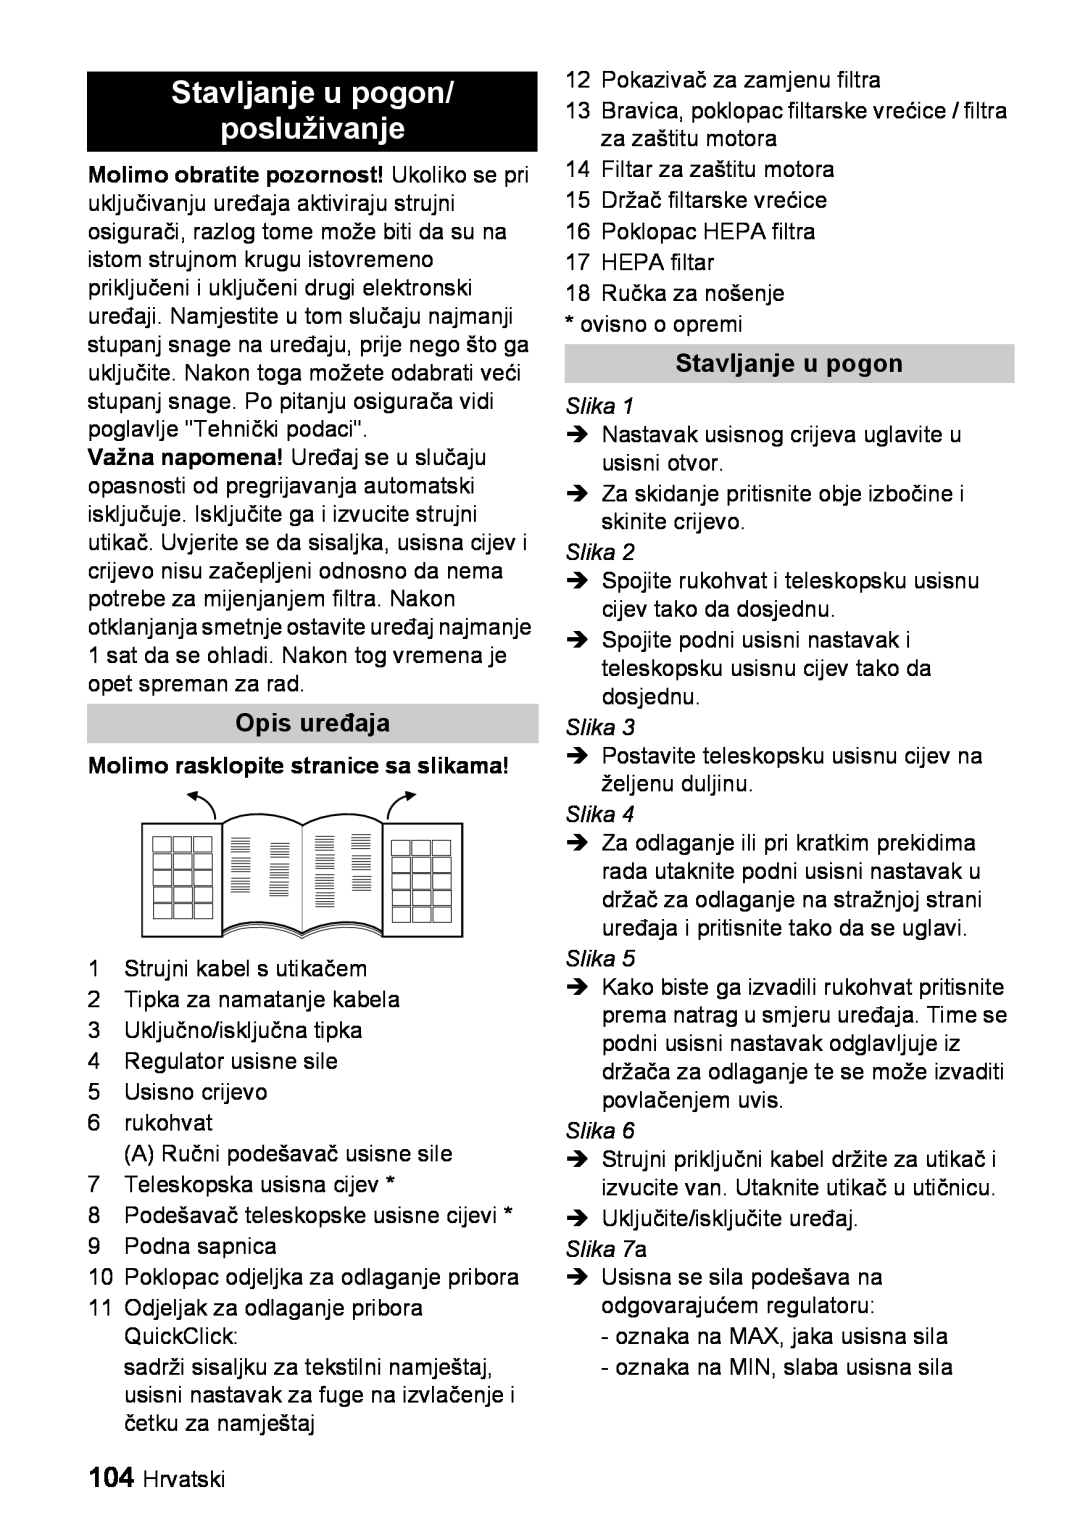 Karcher VC 6100 manual Stavljanje u pogon posluživanje, Opis uređaja, Molimo rasklopite stranice sa slikama, Slika 7a 